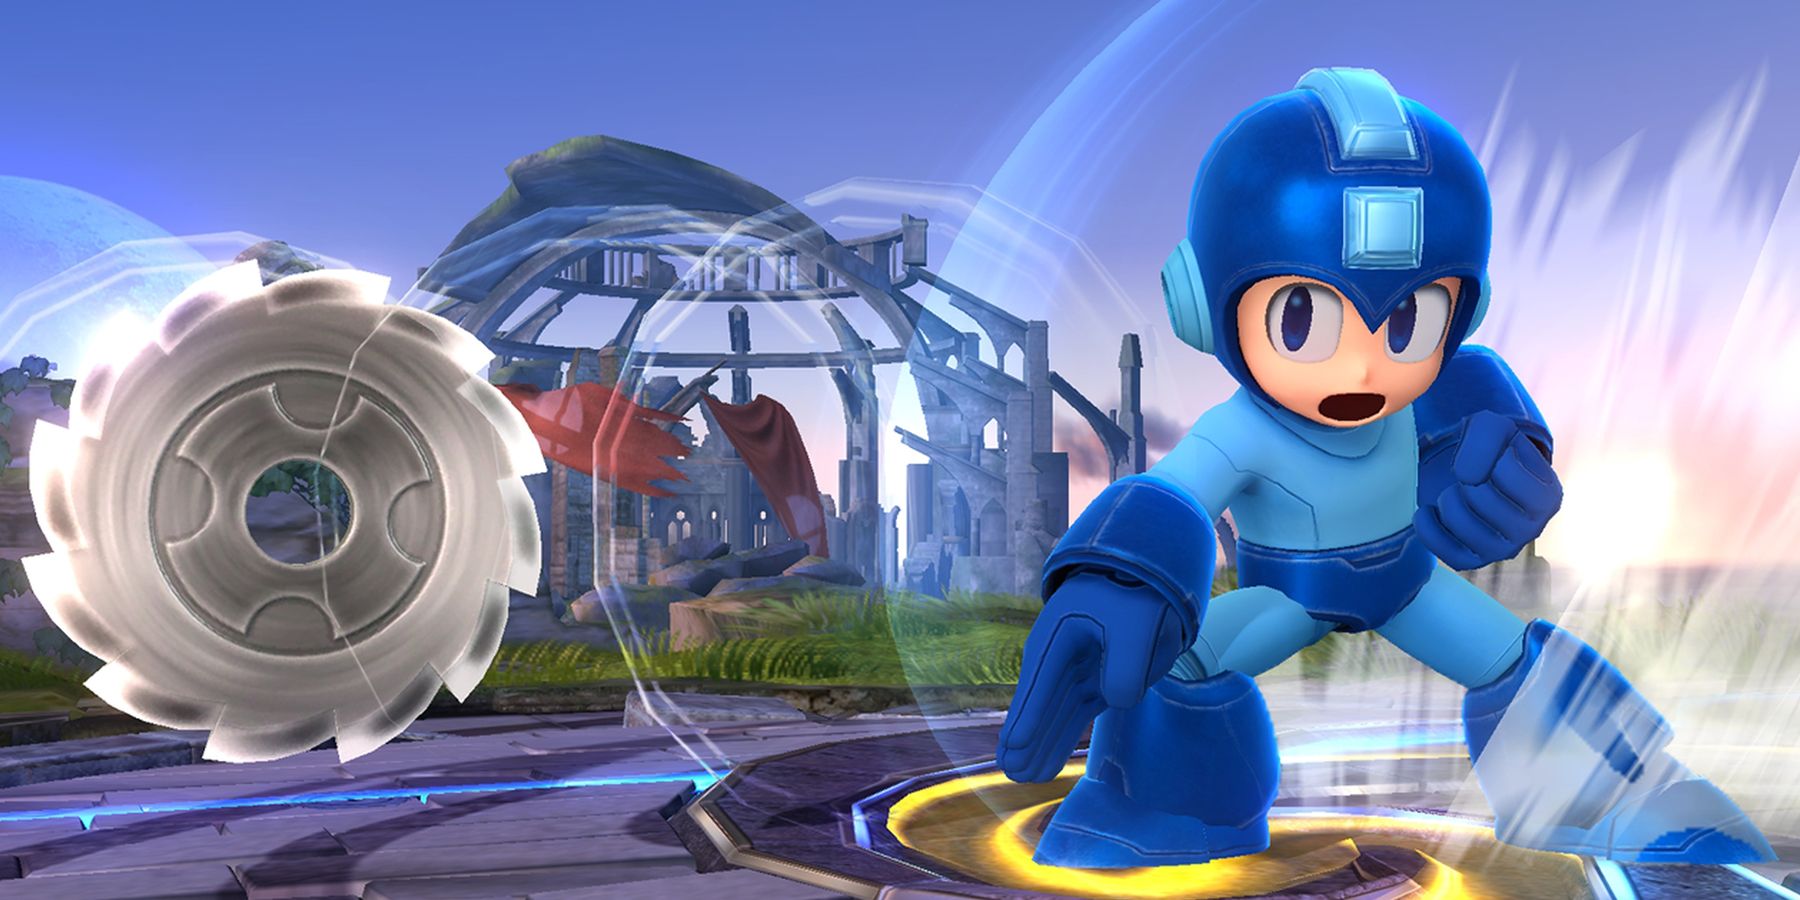 Mega Man throwing a metal saw blade in Super Smash Bros.